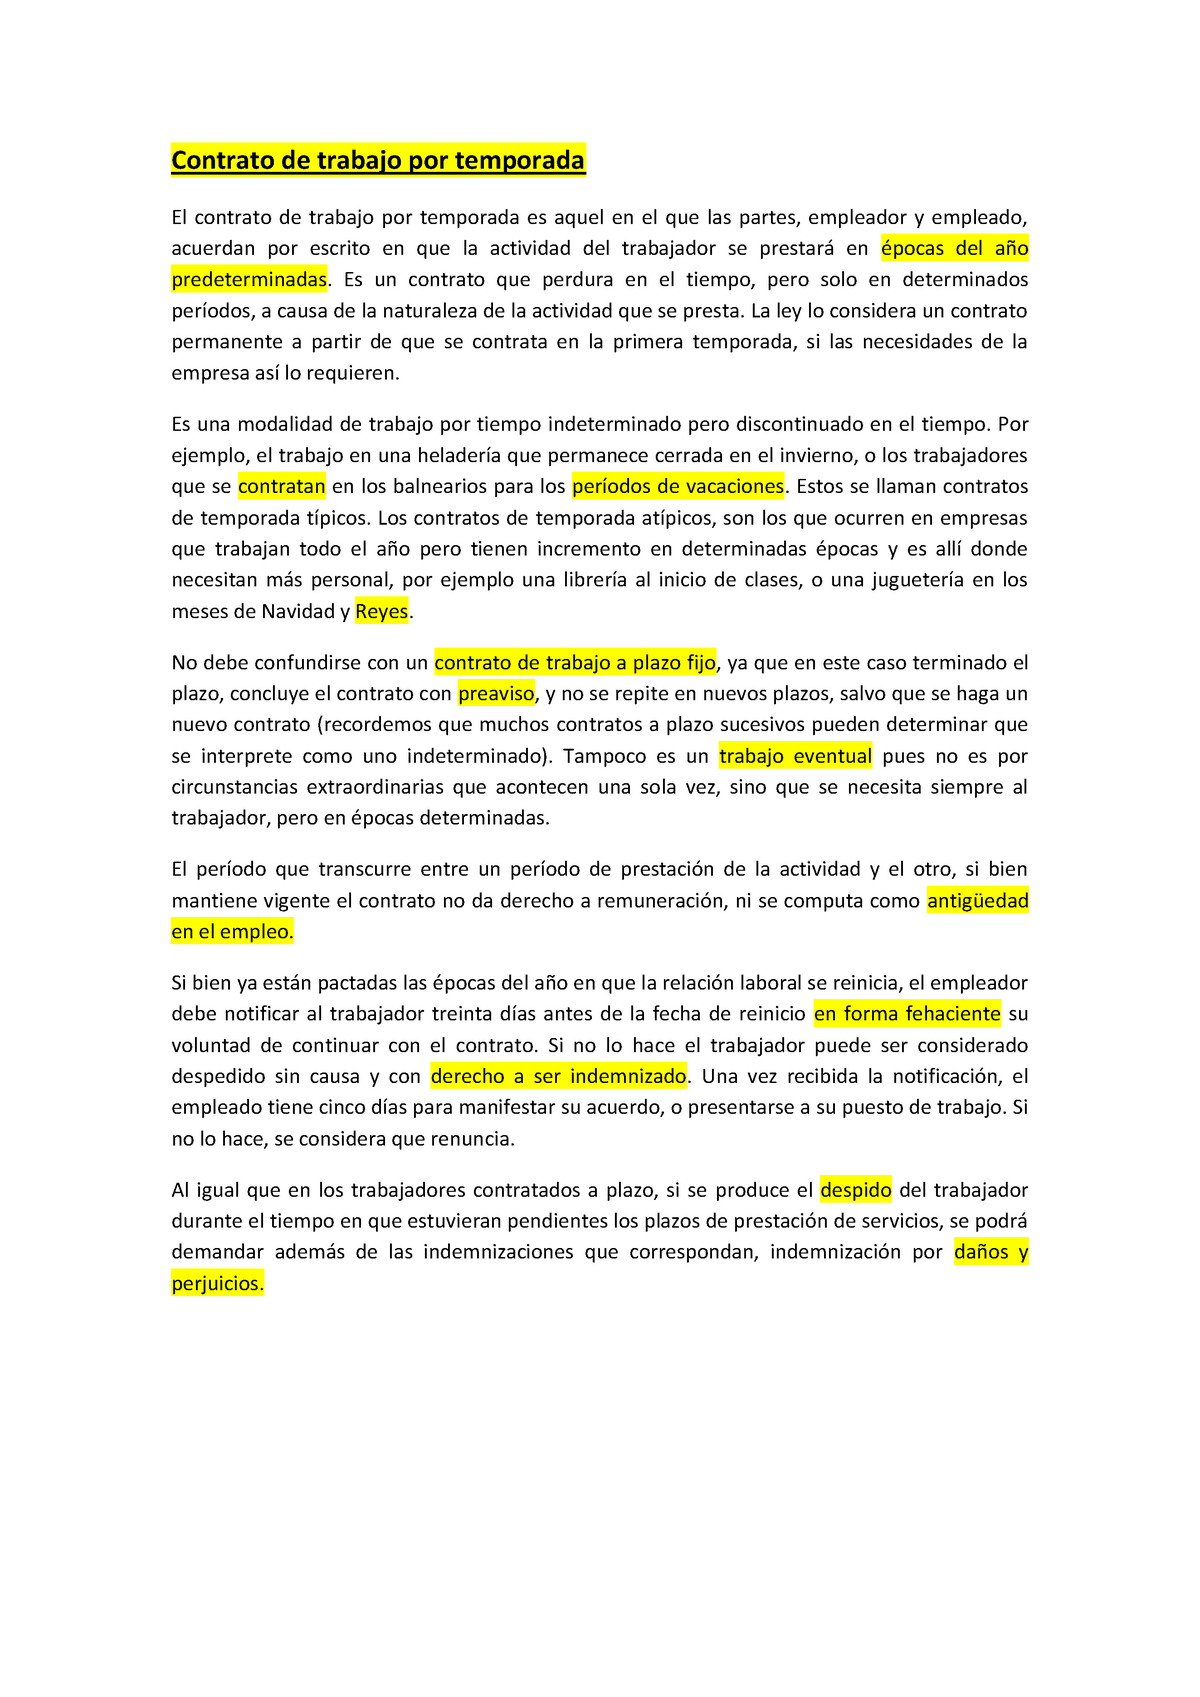 Seasonal Work Agreement Teoría Source - Contrato de trabajo por temporada  El contrato de trabajo por - Studocu